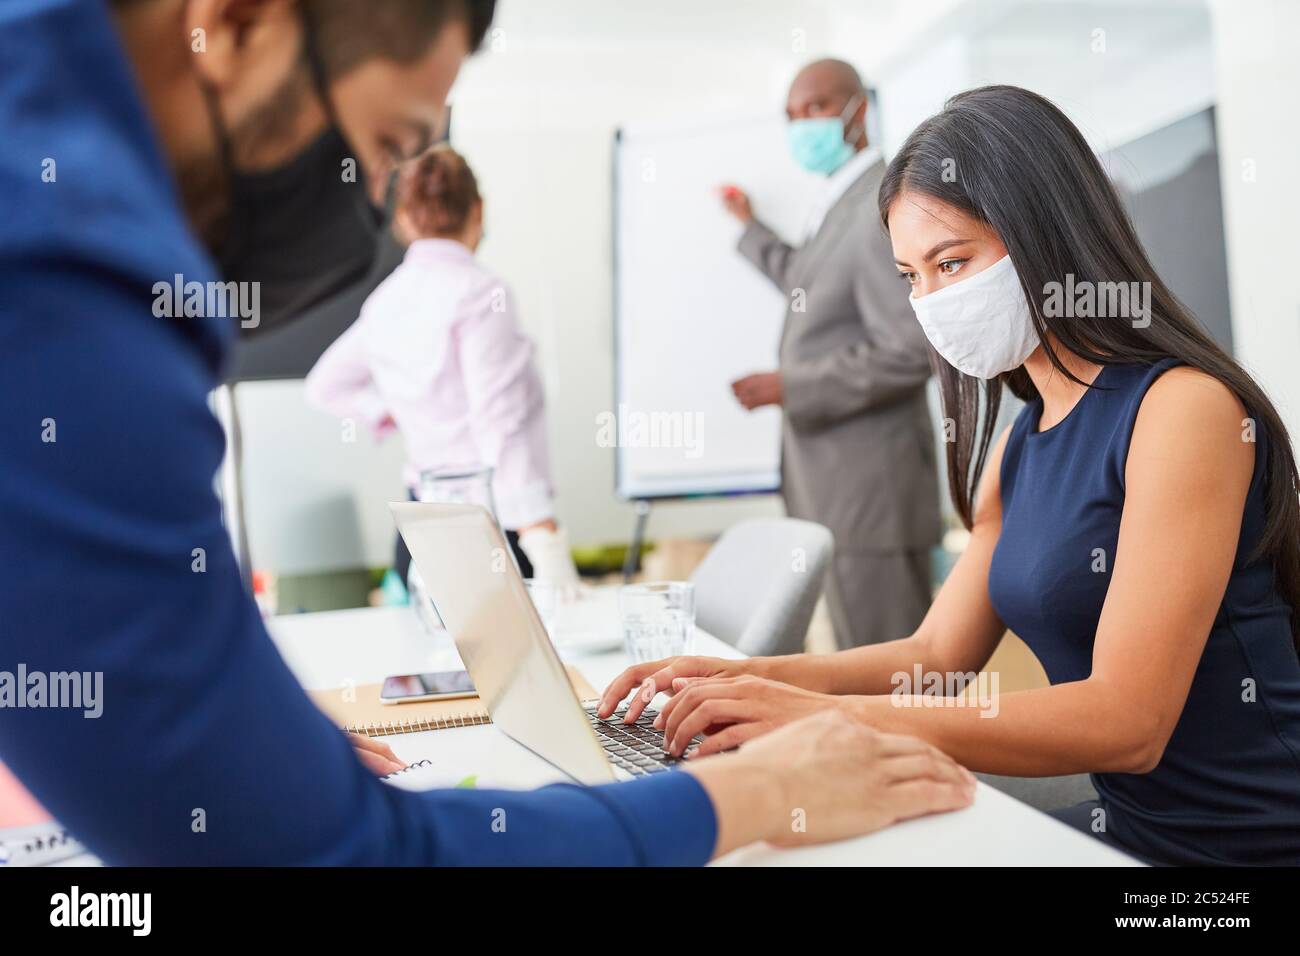 Geschäftsleute mit Covid-19 Maske und Corona-Virus arbeiten im Großraumbüro zusammen Stockfoto